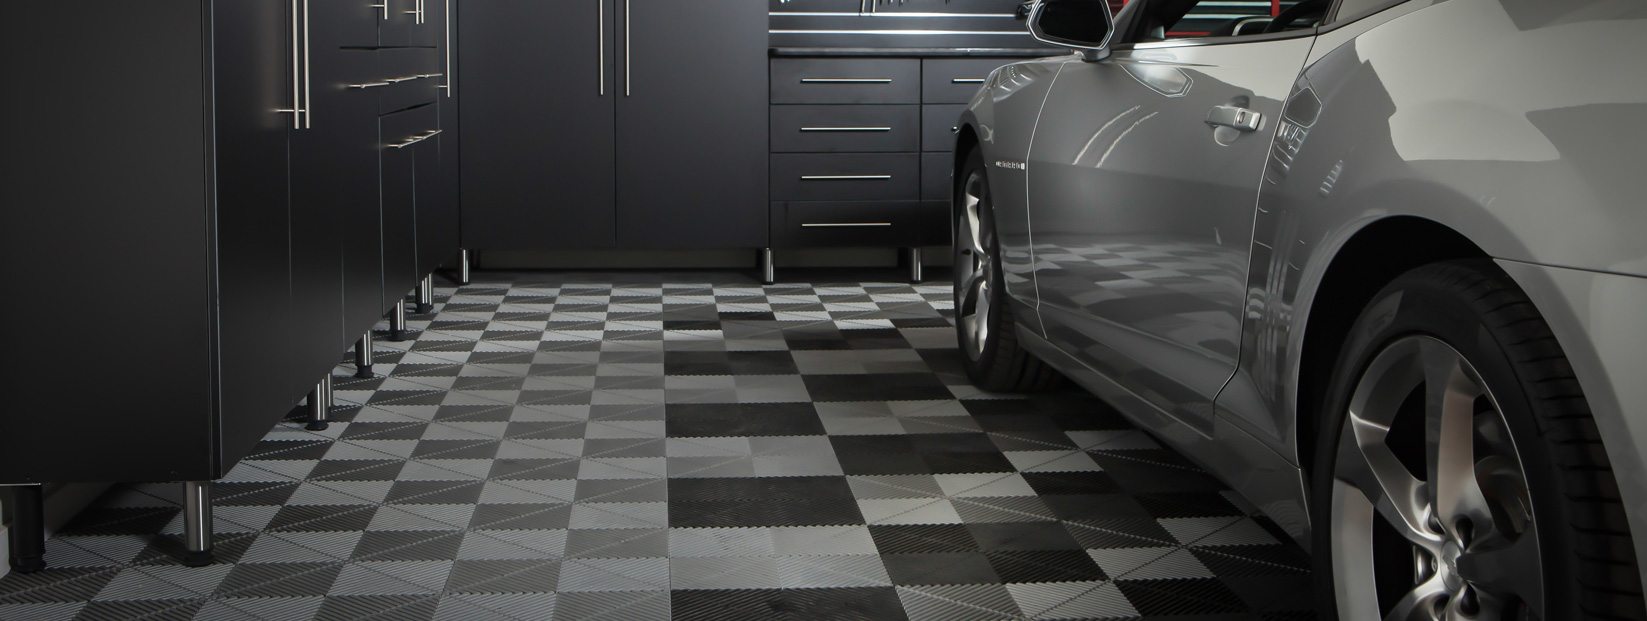 Garage Floor Tiles Missouri City